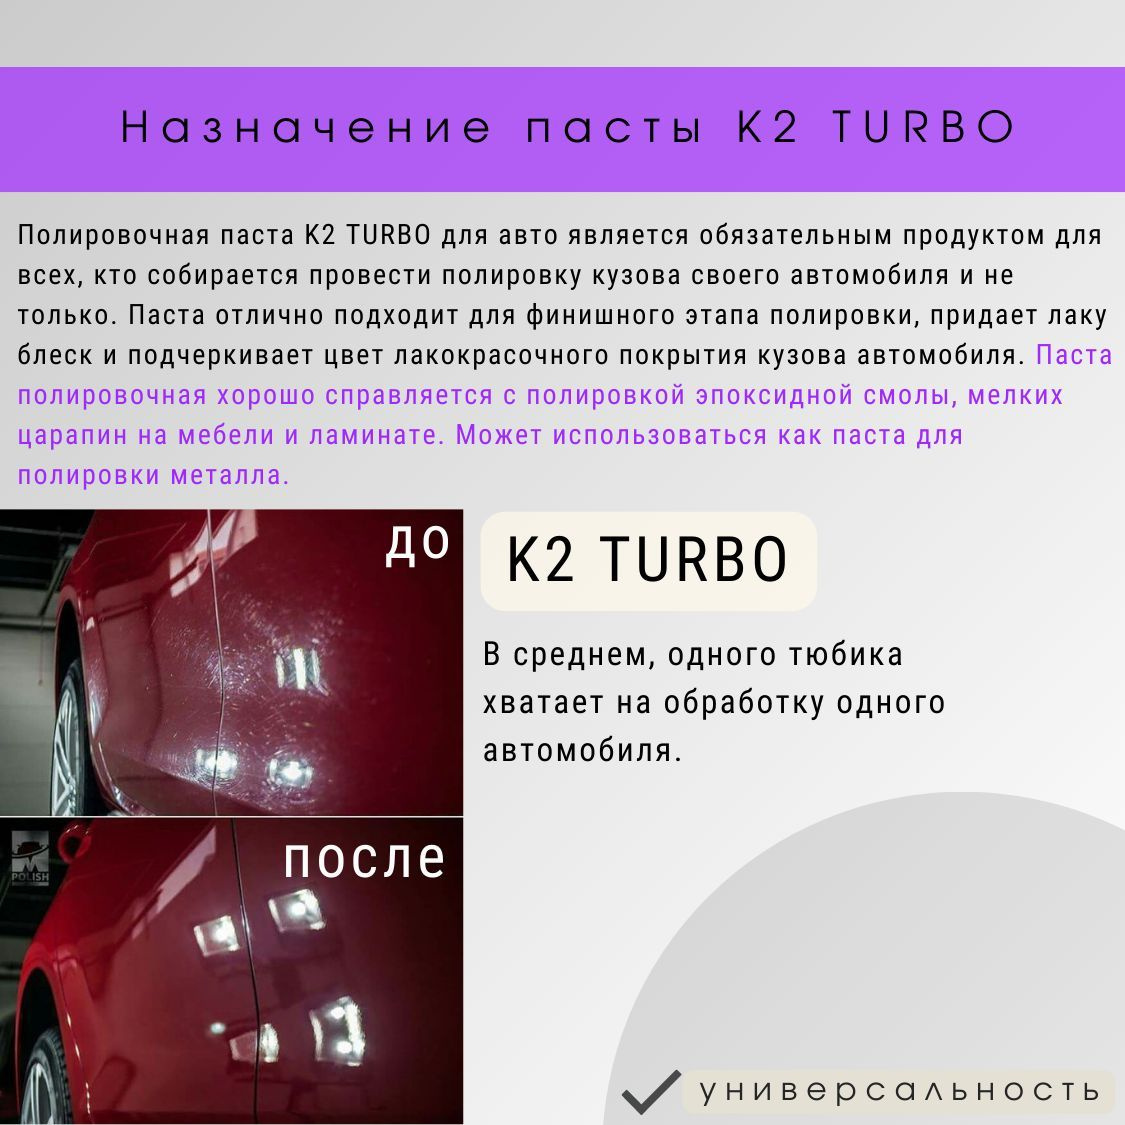 Полировочная паста K2 TURBO для авто является обязательным продуктом для всех, кто собирается провести полировку кузова своего автомобиля и не только. Паста полировальная для автомобиля отлично подходит для финишного этапа полировки, придает лаку блеск и подчеркивает цвет лакокрасочного покрытия кузова автомобиля. Паста полировочная хорошо справляется с полировкой эпоксидной смолы, мелких царапин на мебели и ламинате. Полироль может использоваться как паста для полировки металла. В среднем, одного тюбика К2 Турбо хватает на обработку одного автомобиля.